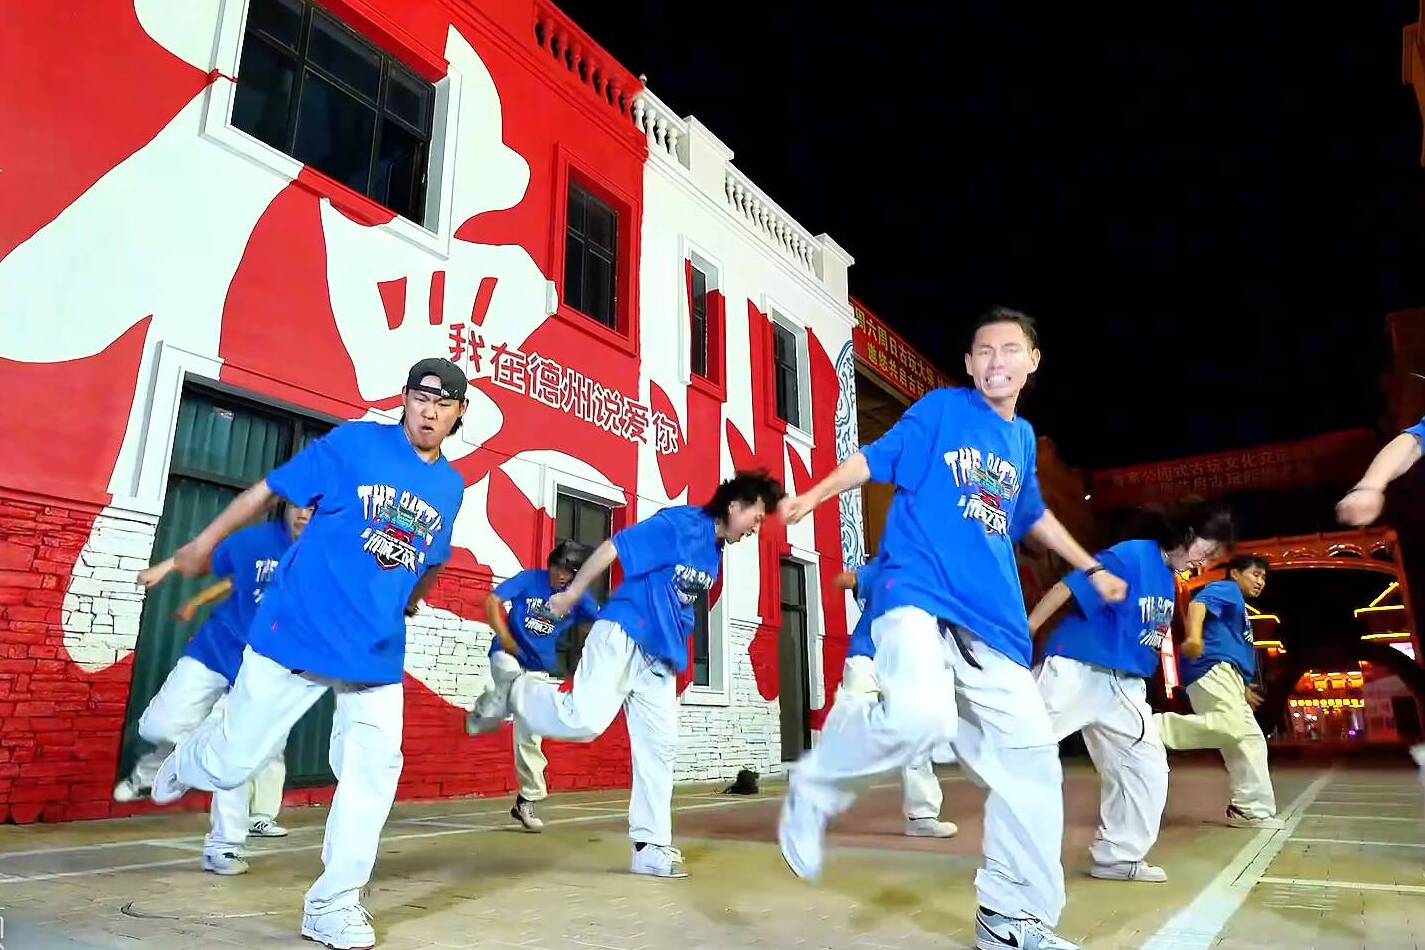 ”德州版饿狼”街舞表演来袭 每一步都充满青春活力